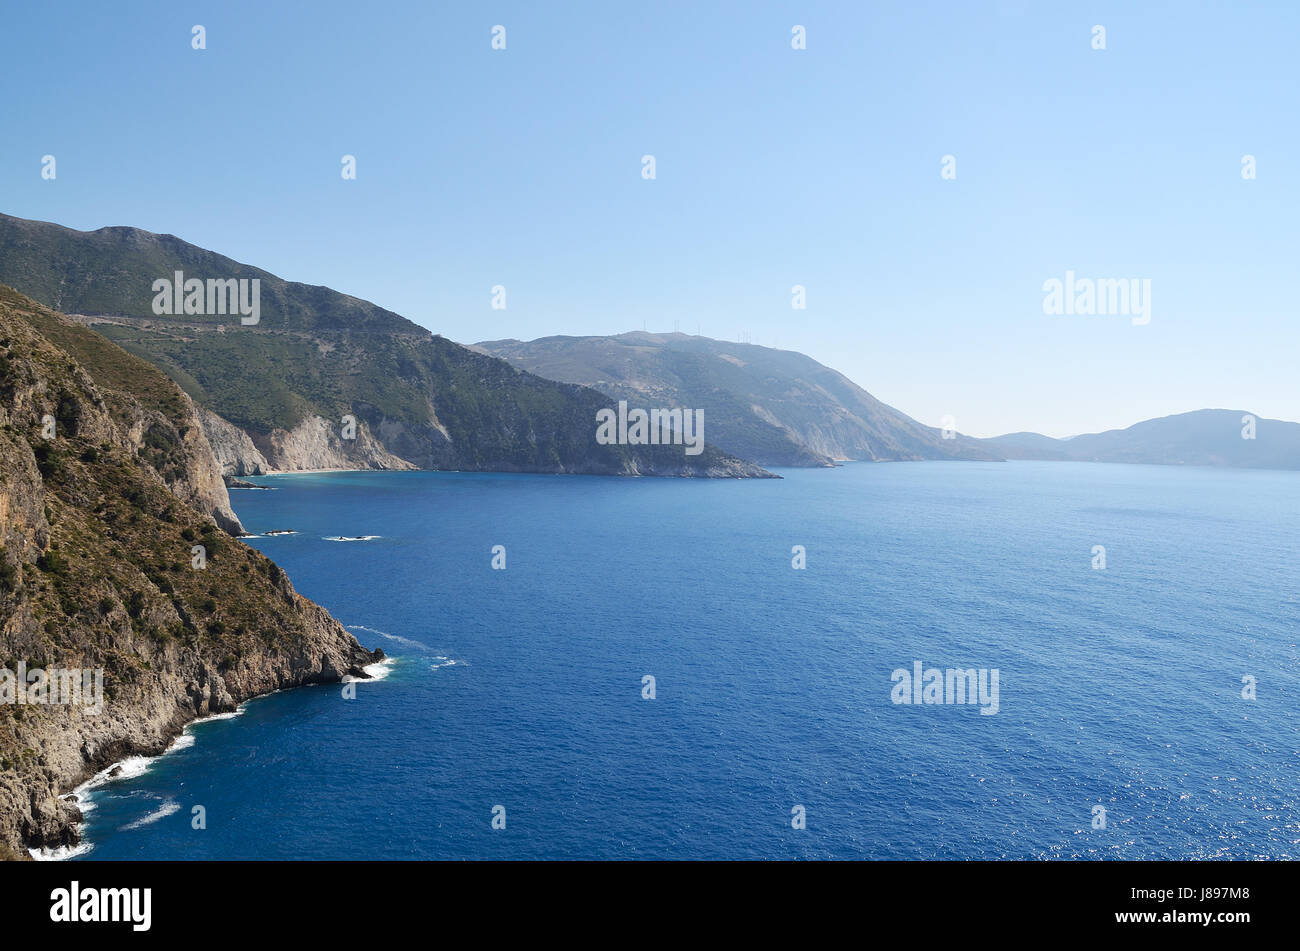 Coastline of Kefalonia in Greece Stock Photo